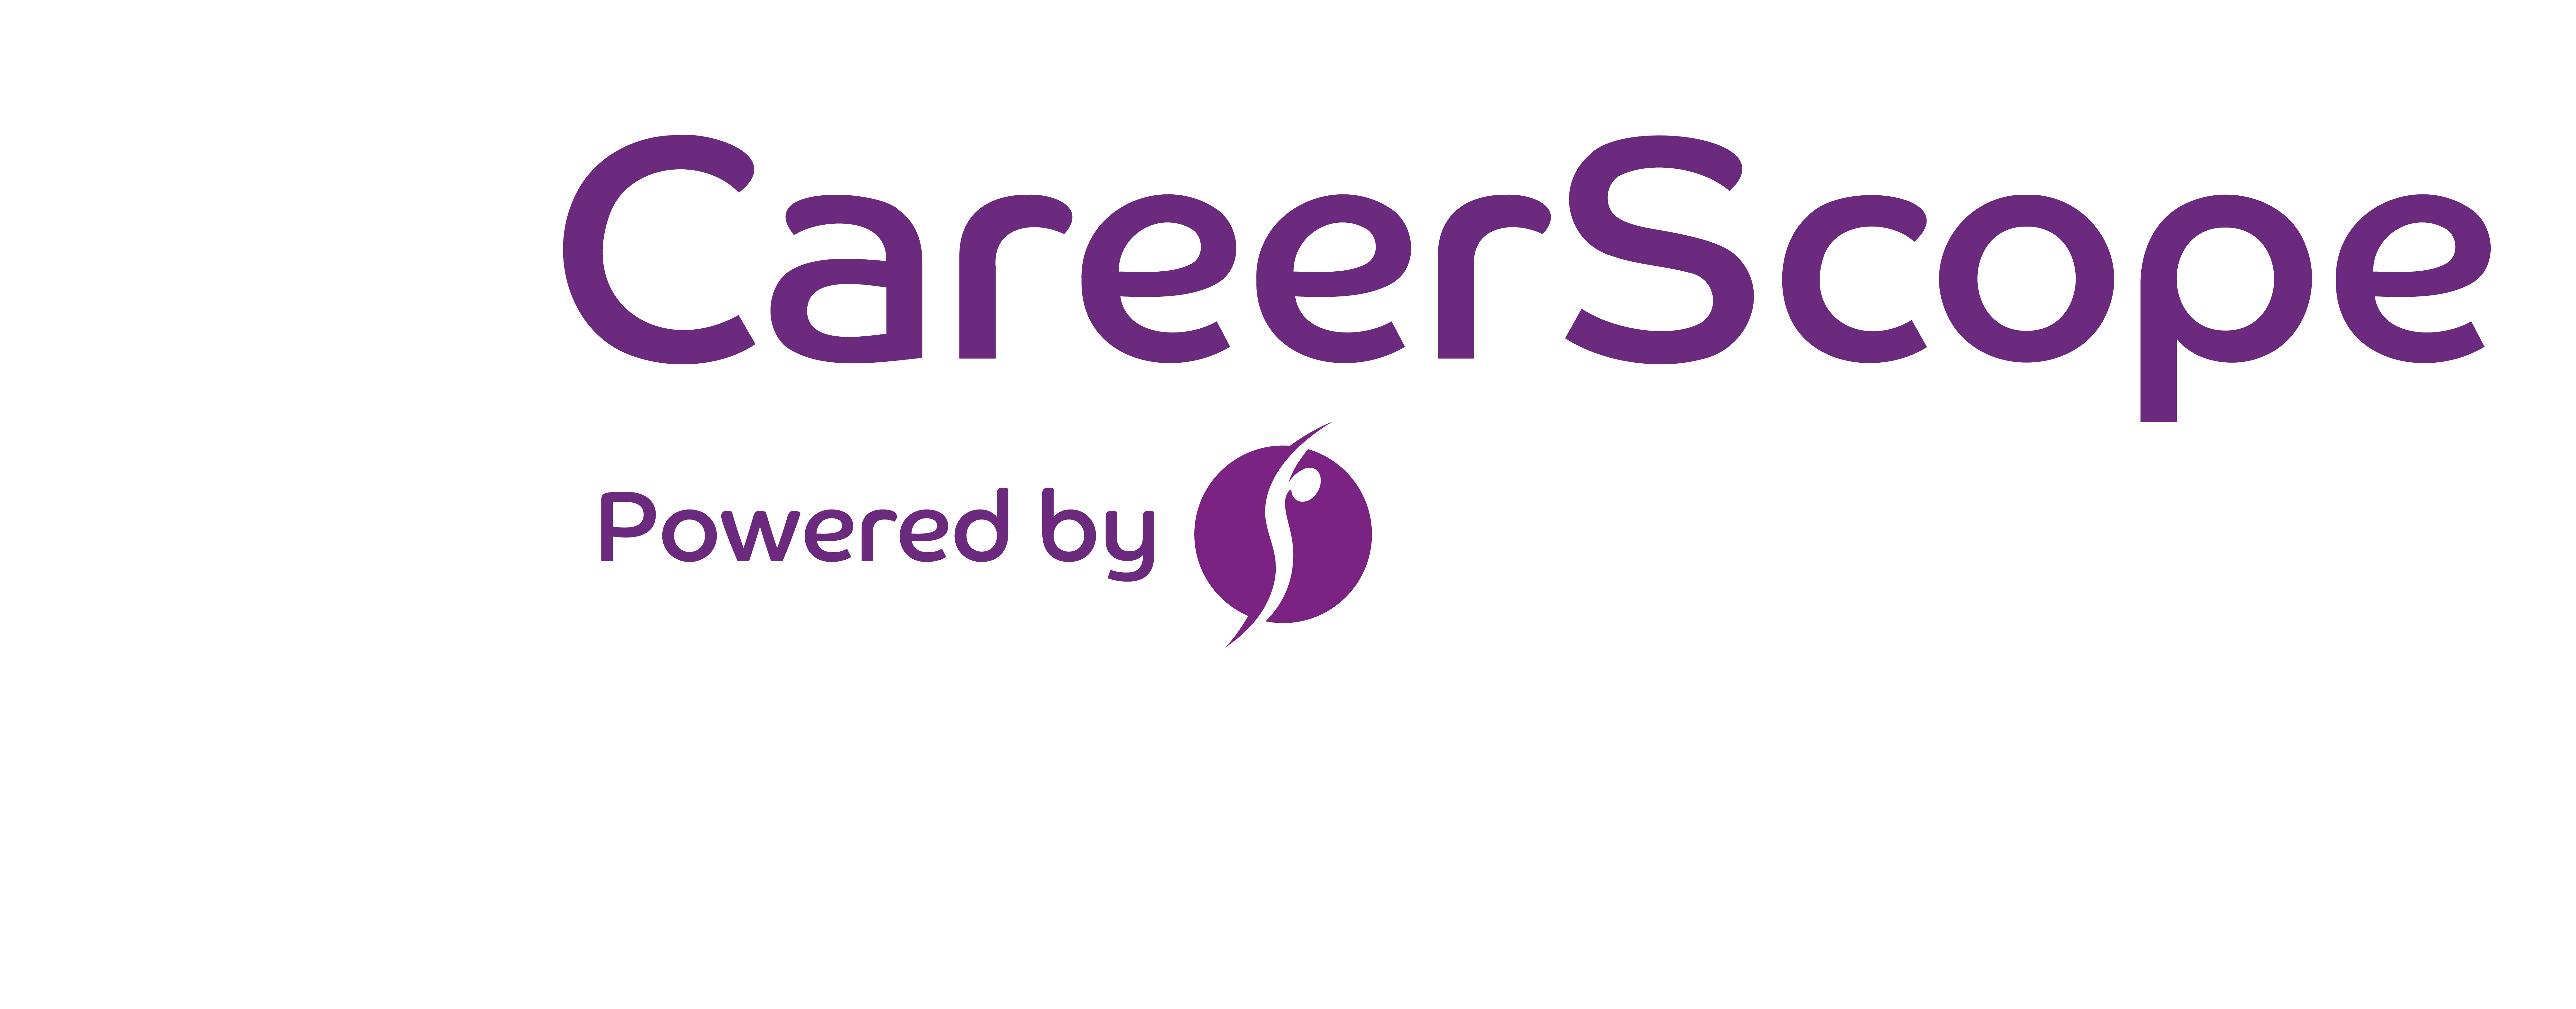 Springboard Careerscope Logo